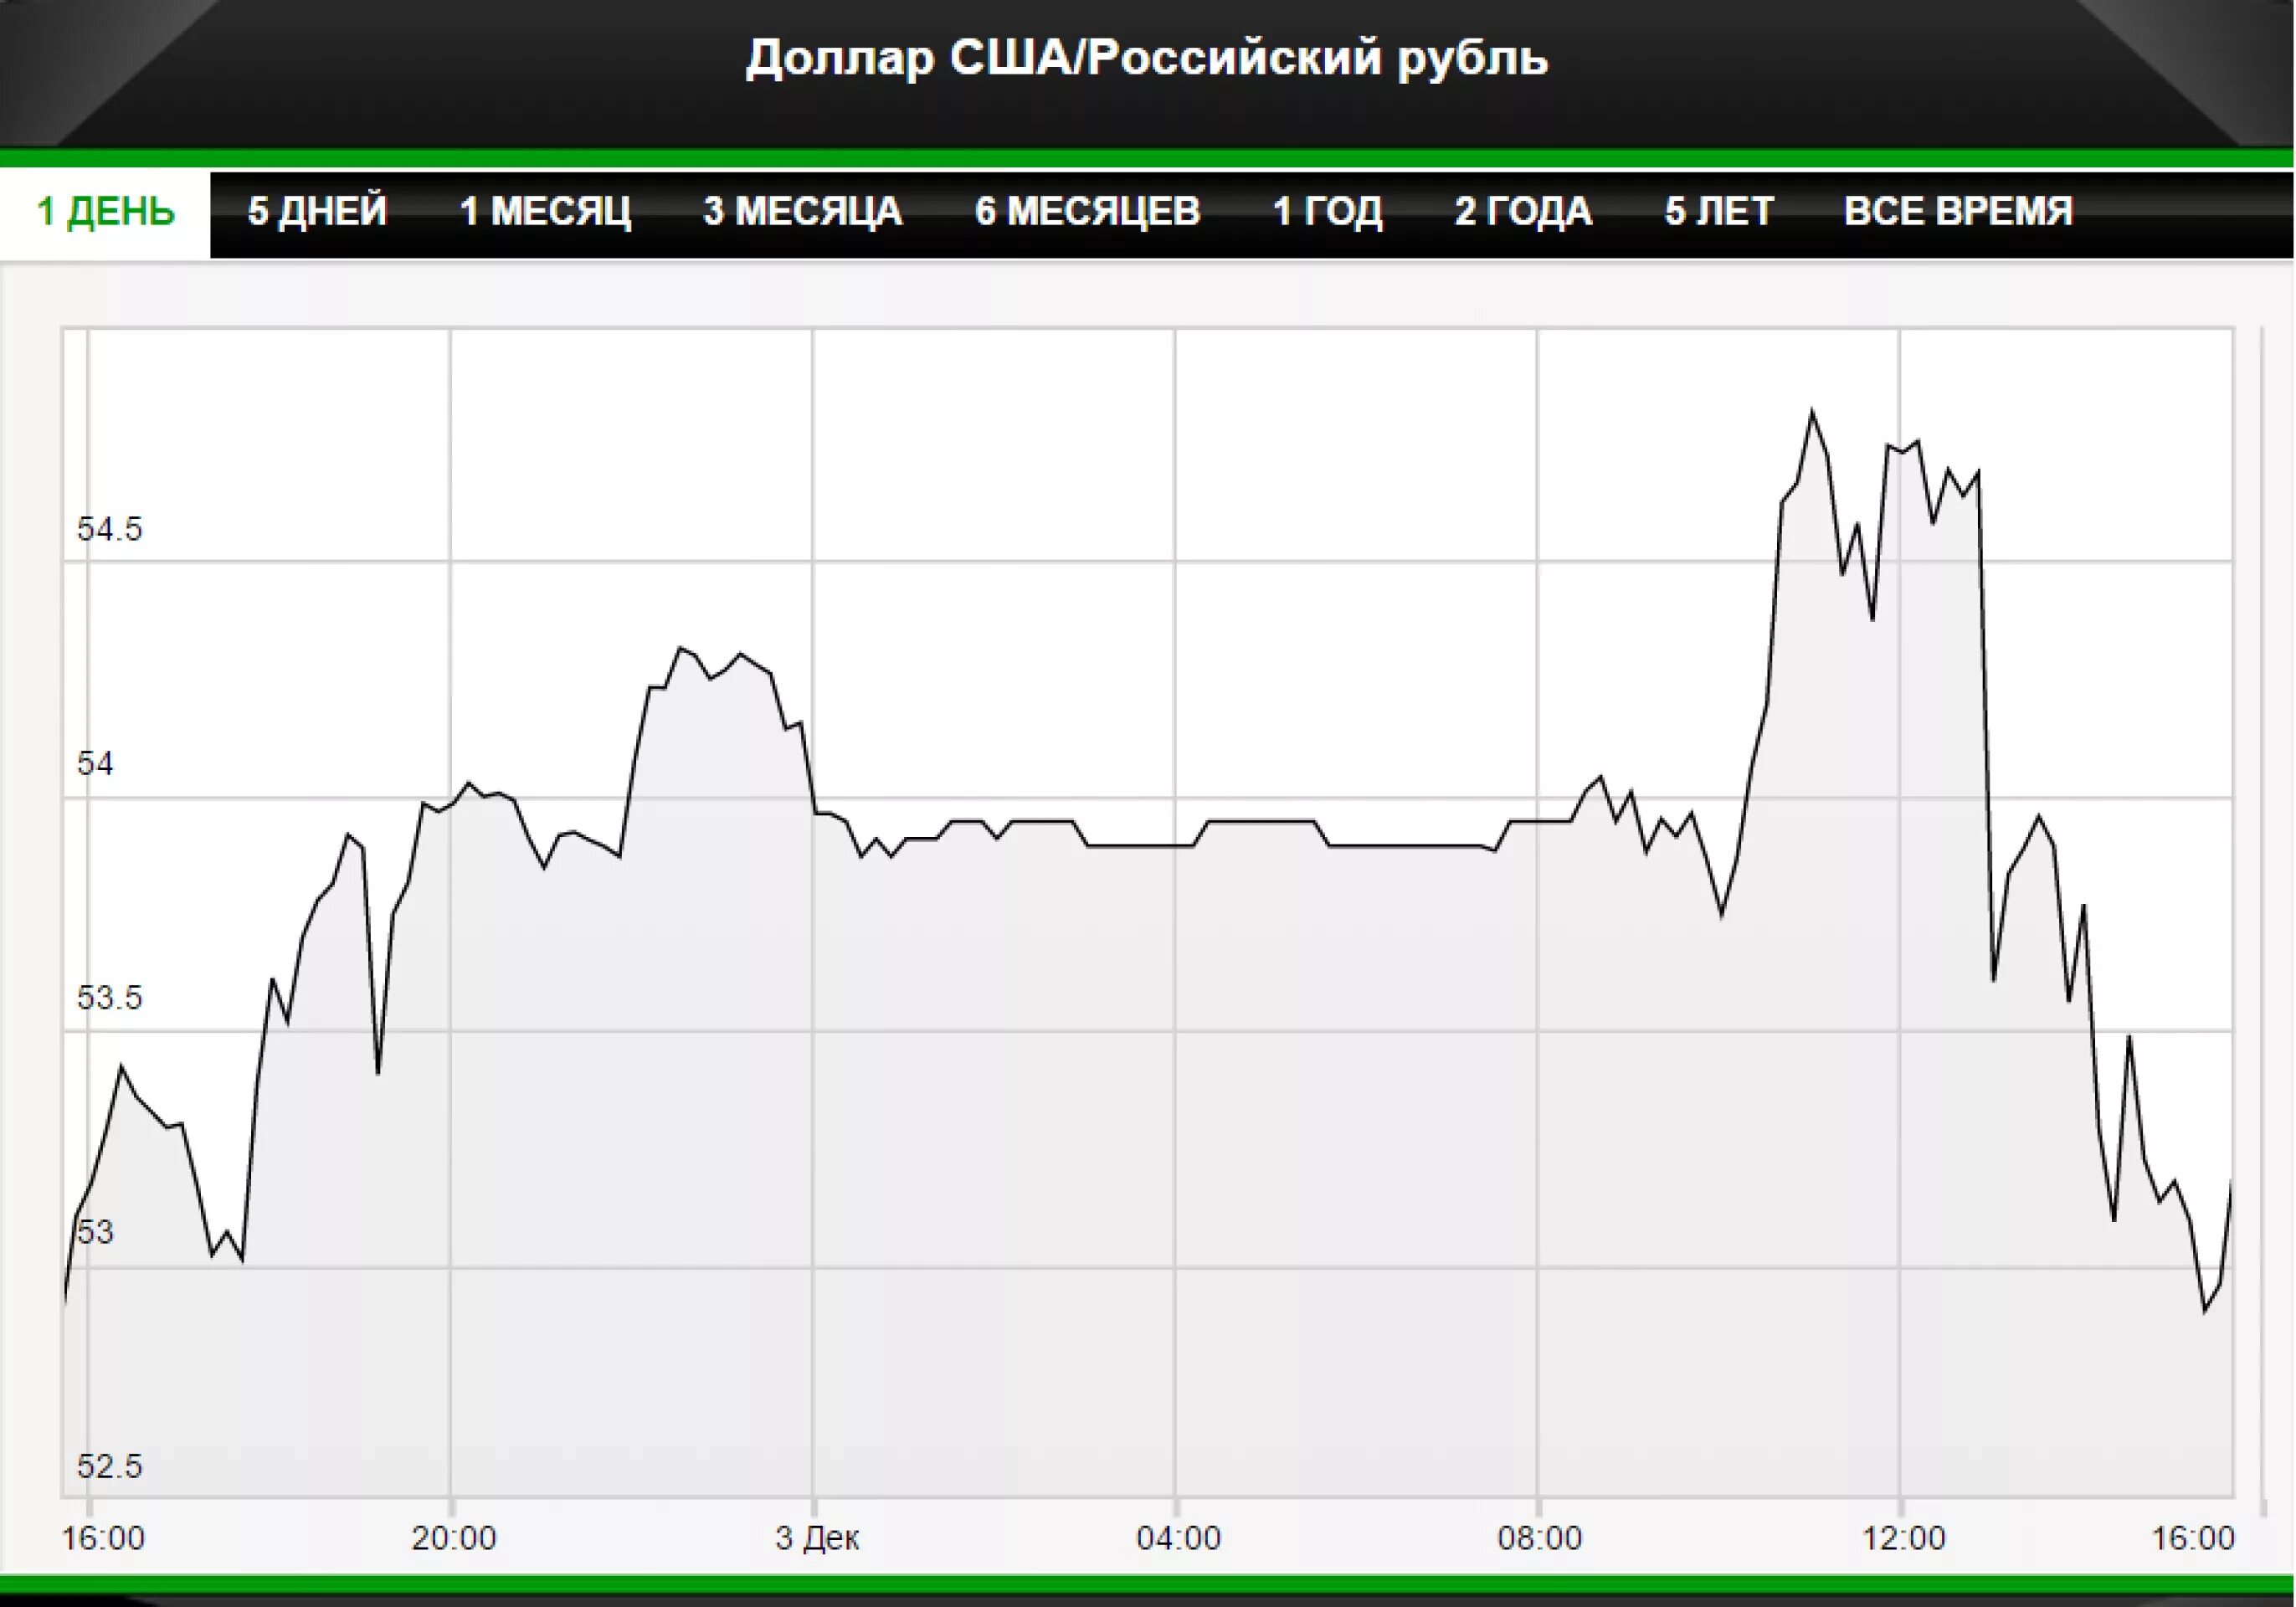 Мосбиржа доллар рубль на сегодня